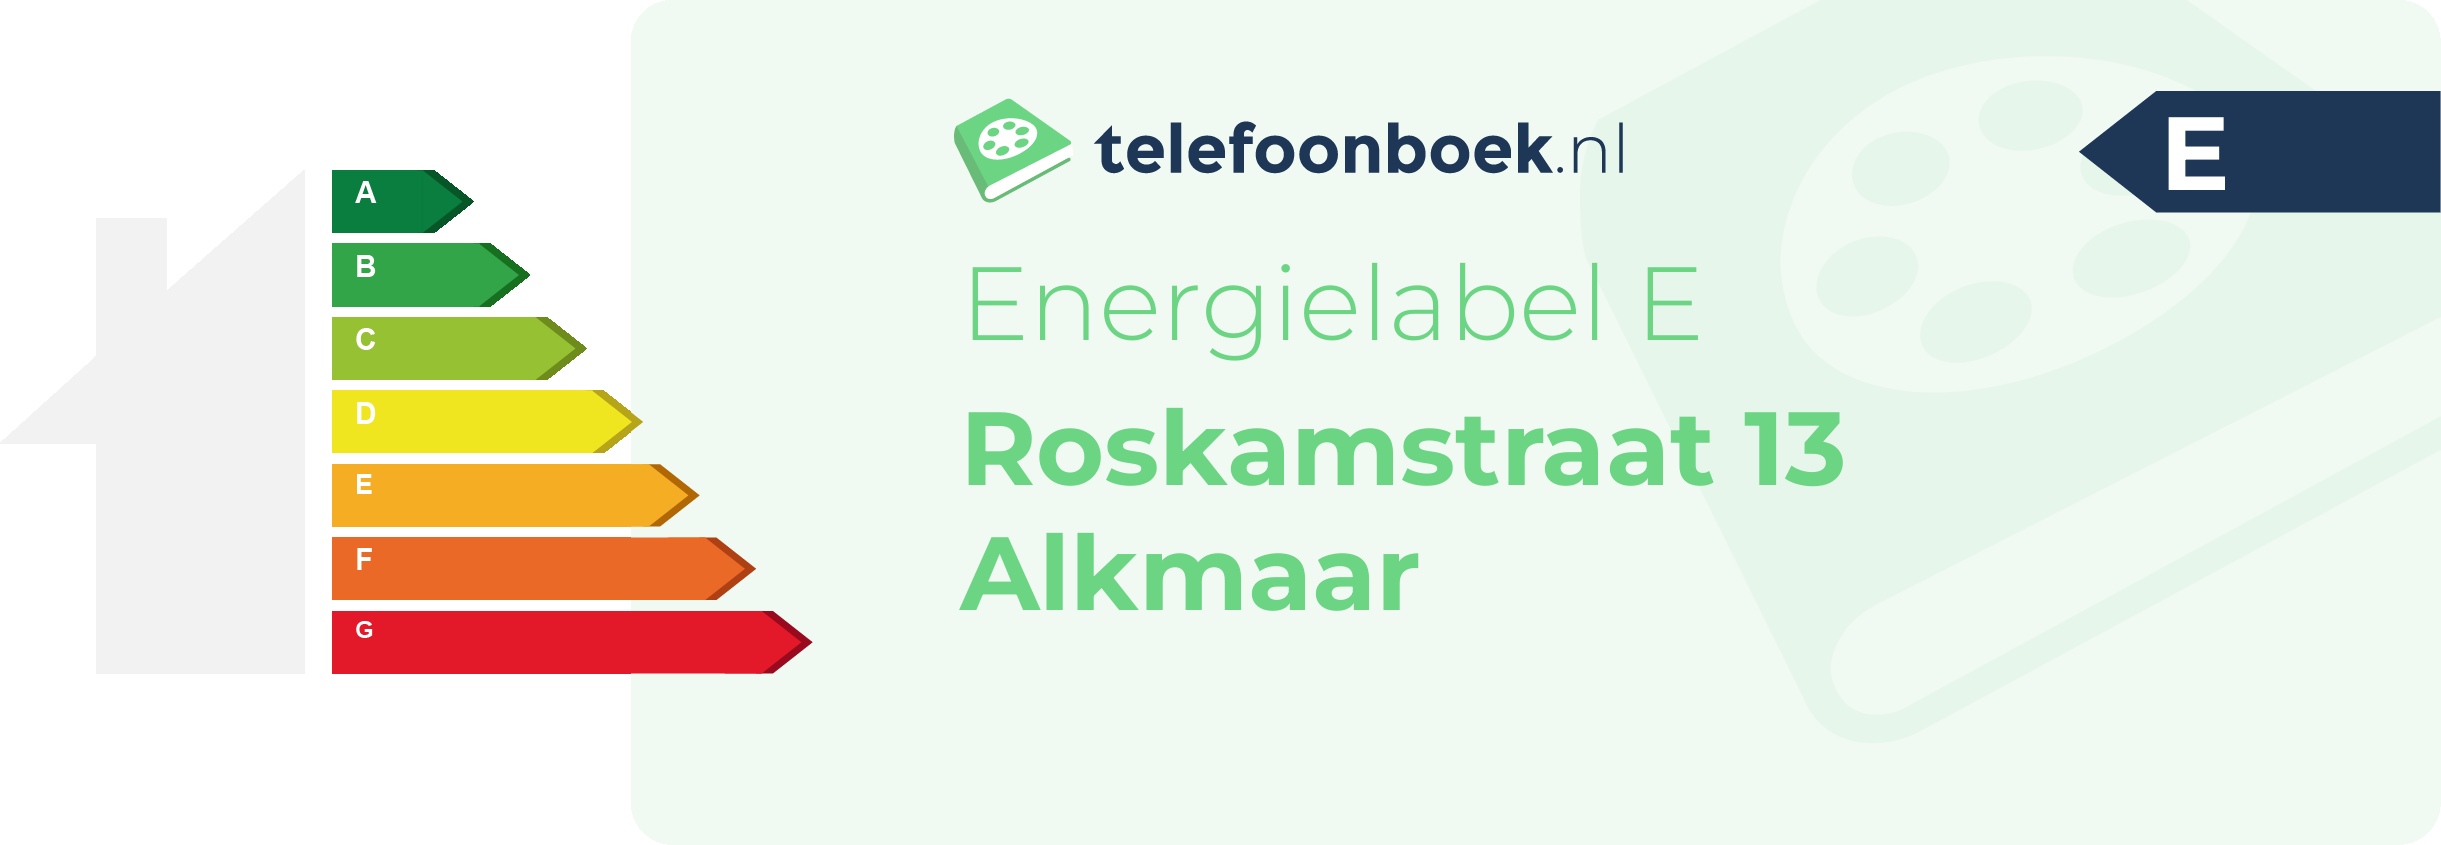 Energielabel Roskamstraat 13 Alkmaar